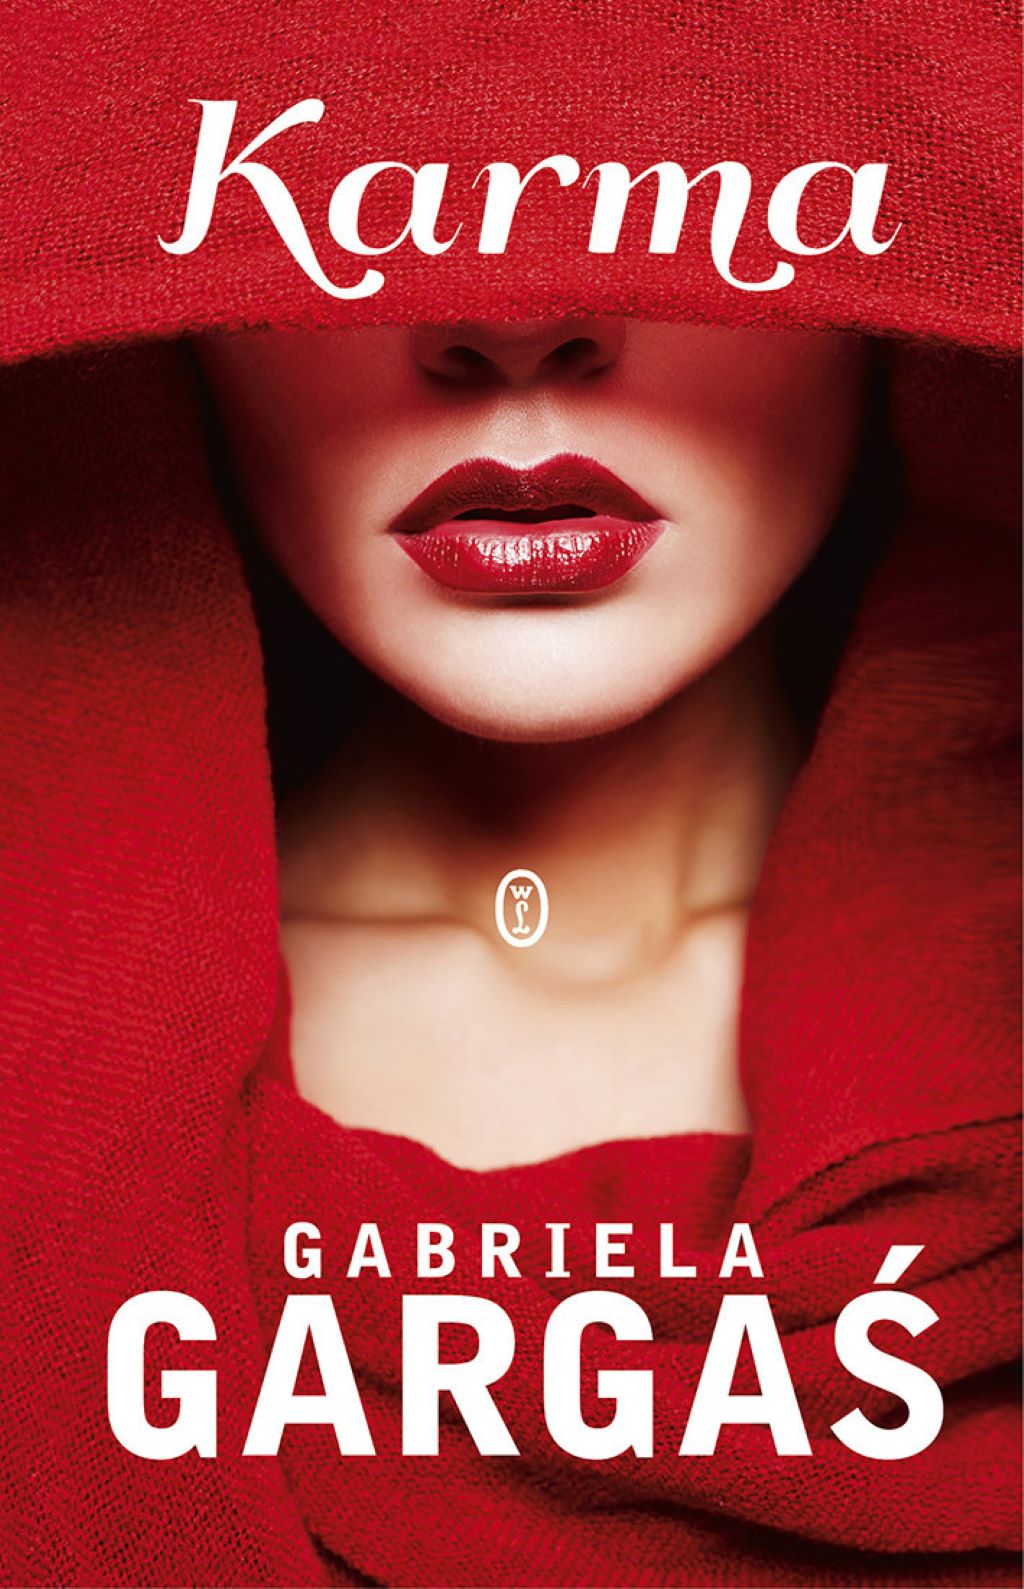 Na okładce twarz kobiety z zakrytymi czerwoną chustą oczami, włosami i ramionami. Usta pomalowane na czerwono.